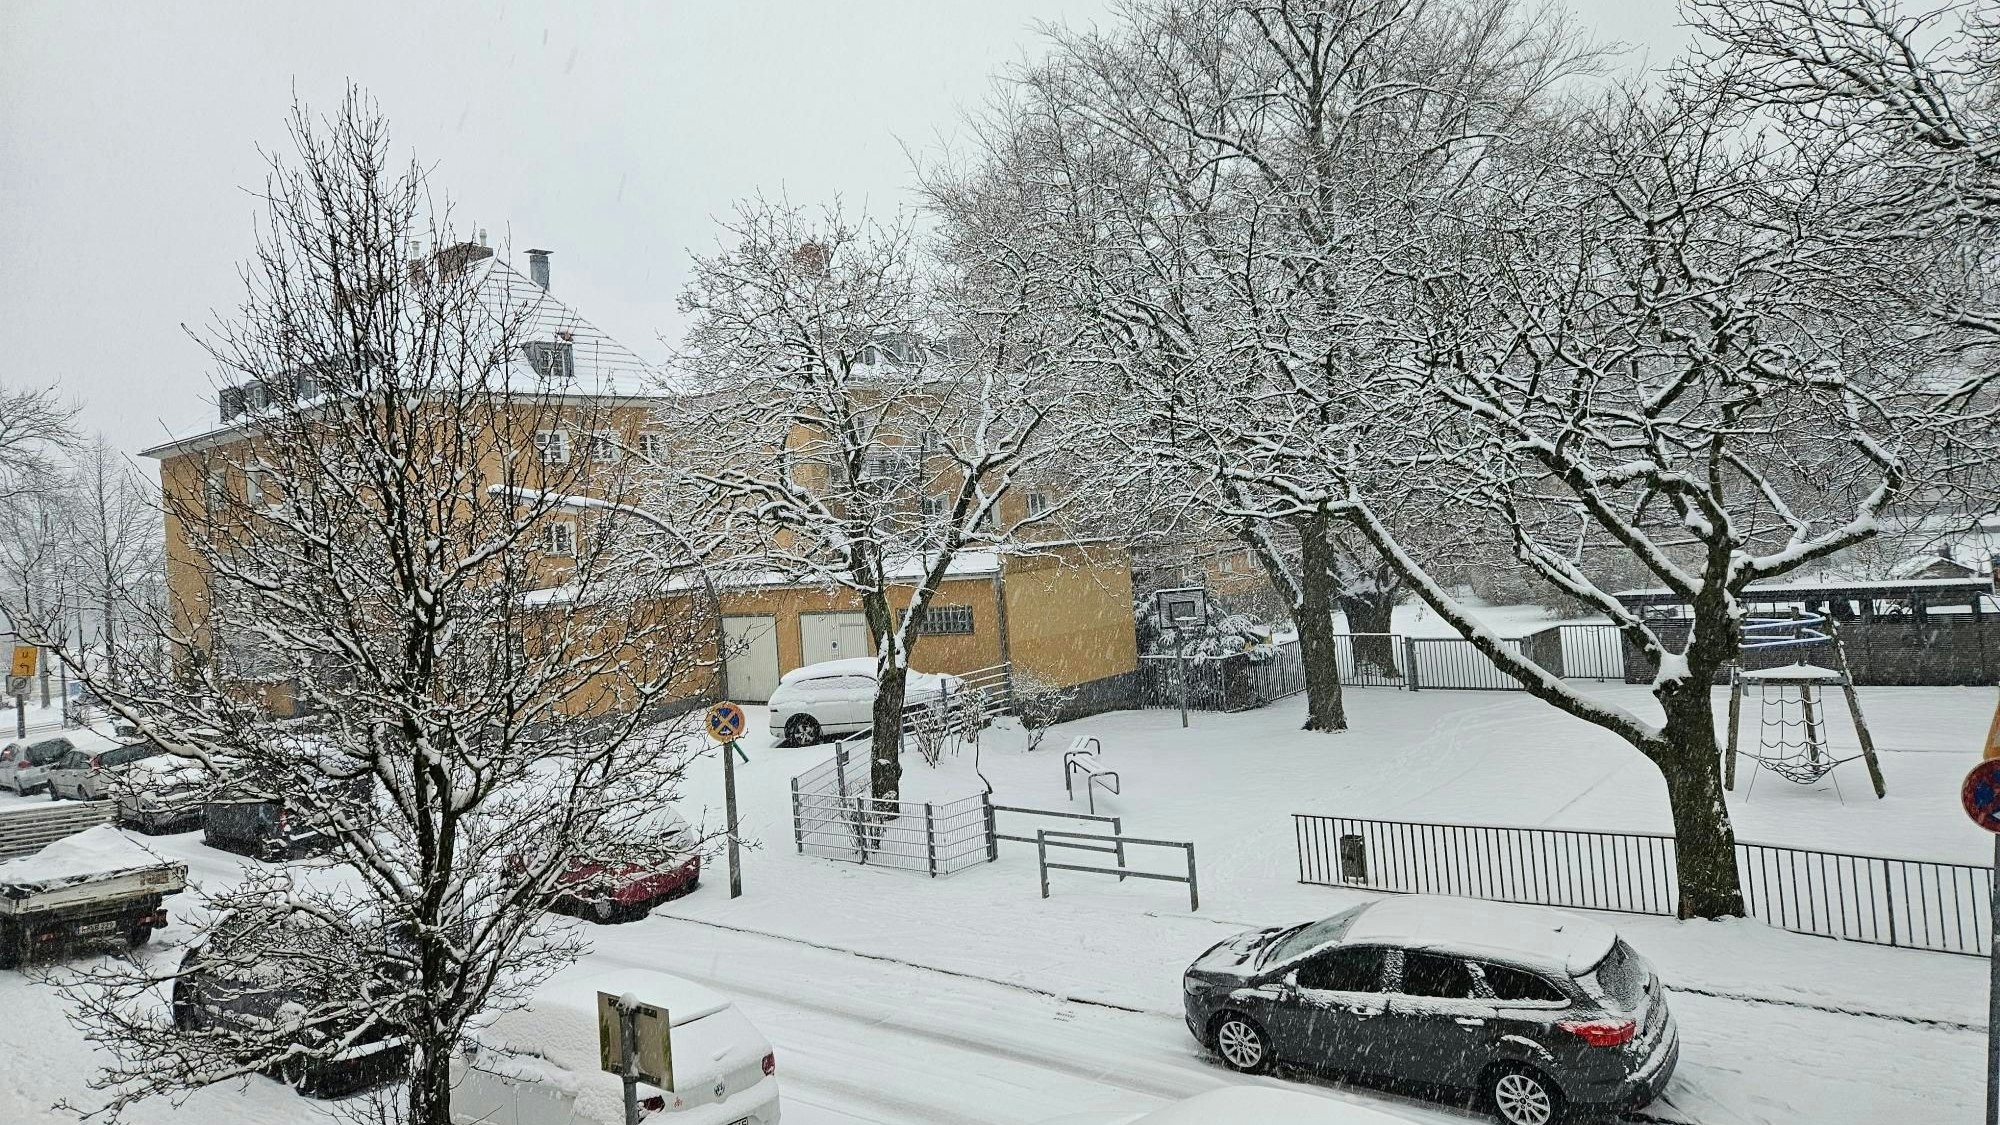 Verschneite Straße mit Autos, Bäumen und Wohnhaus